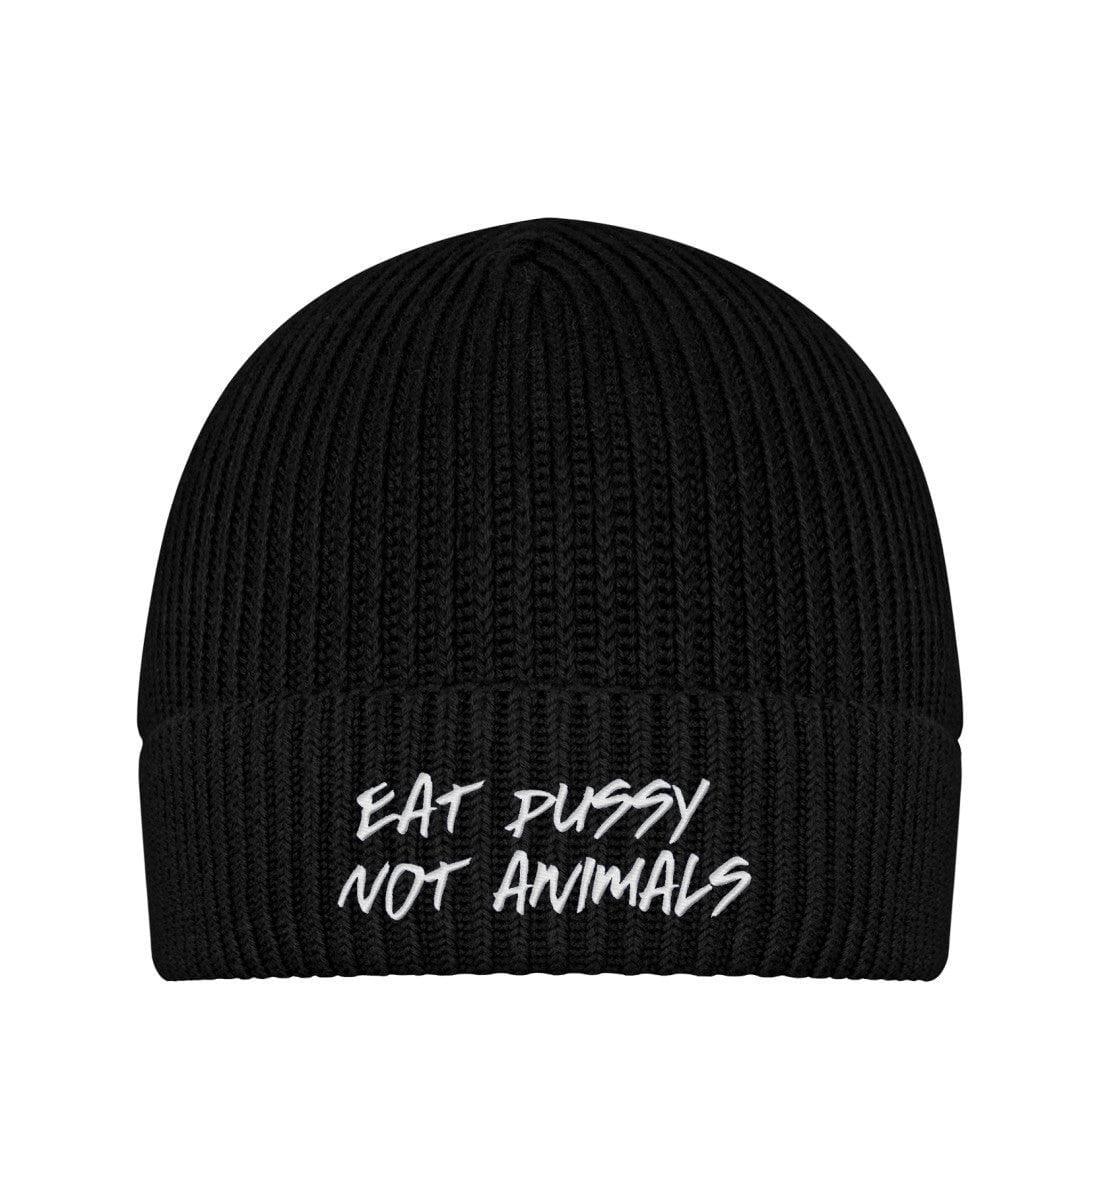 Eat pussy not animals - Fischermütze mit Stick - Team Vegan © vegan t shirt